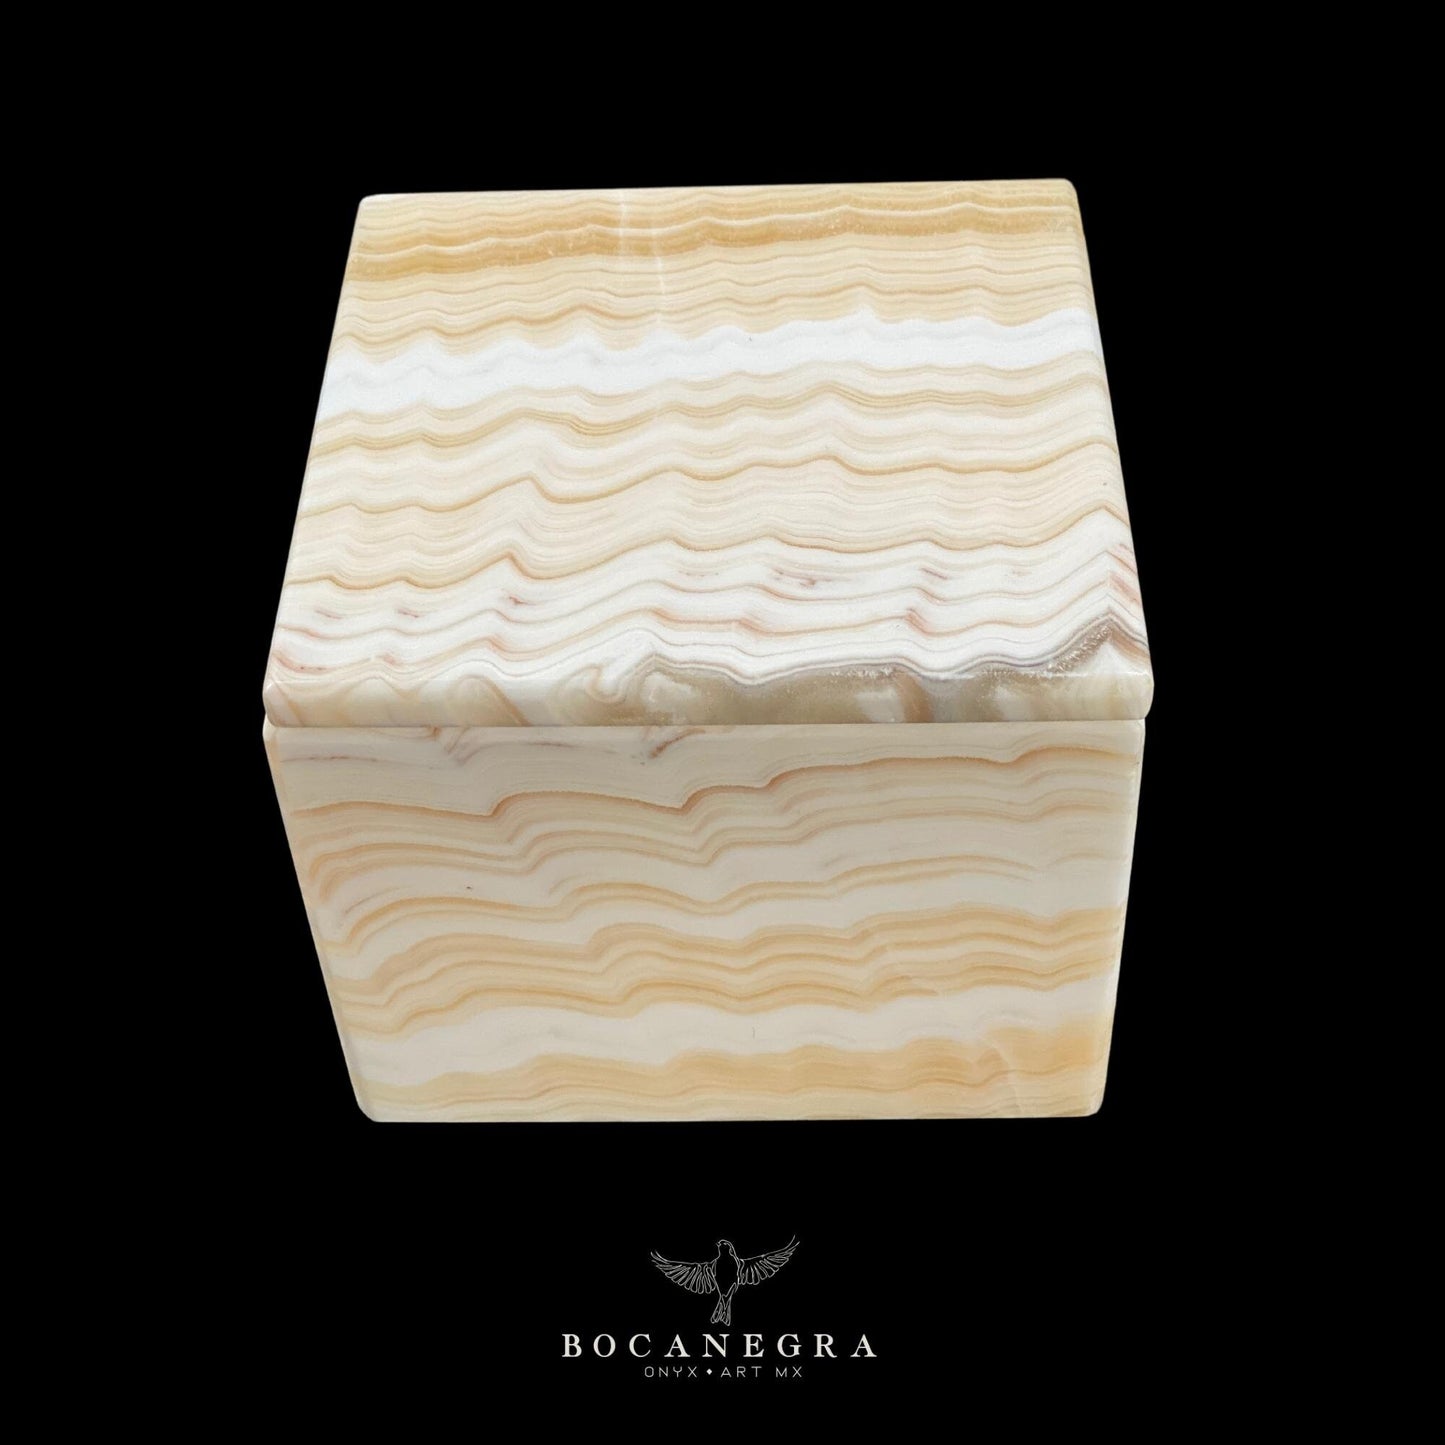 Beige & White Onyx Square Jewelry Box - Organizer - Storage Box